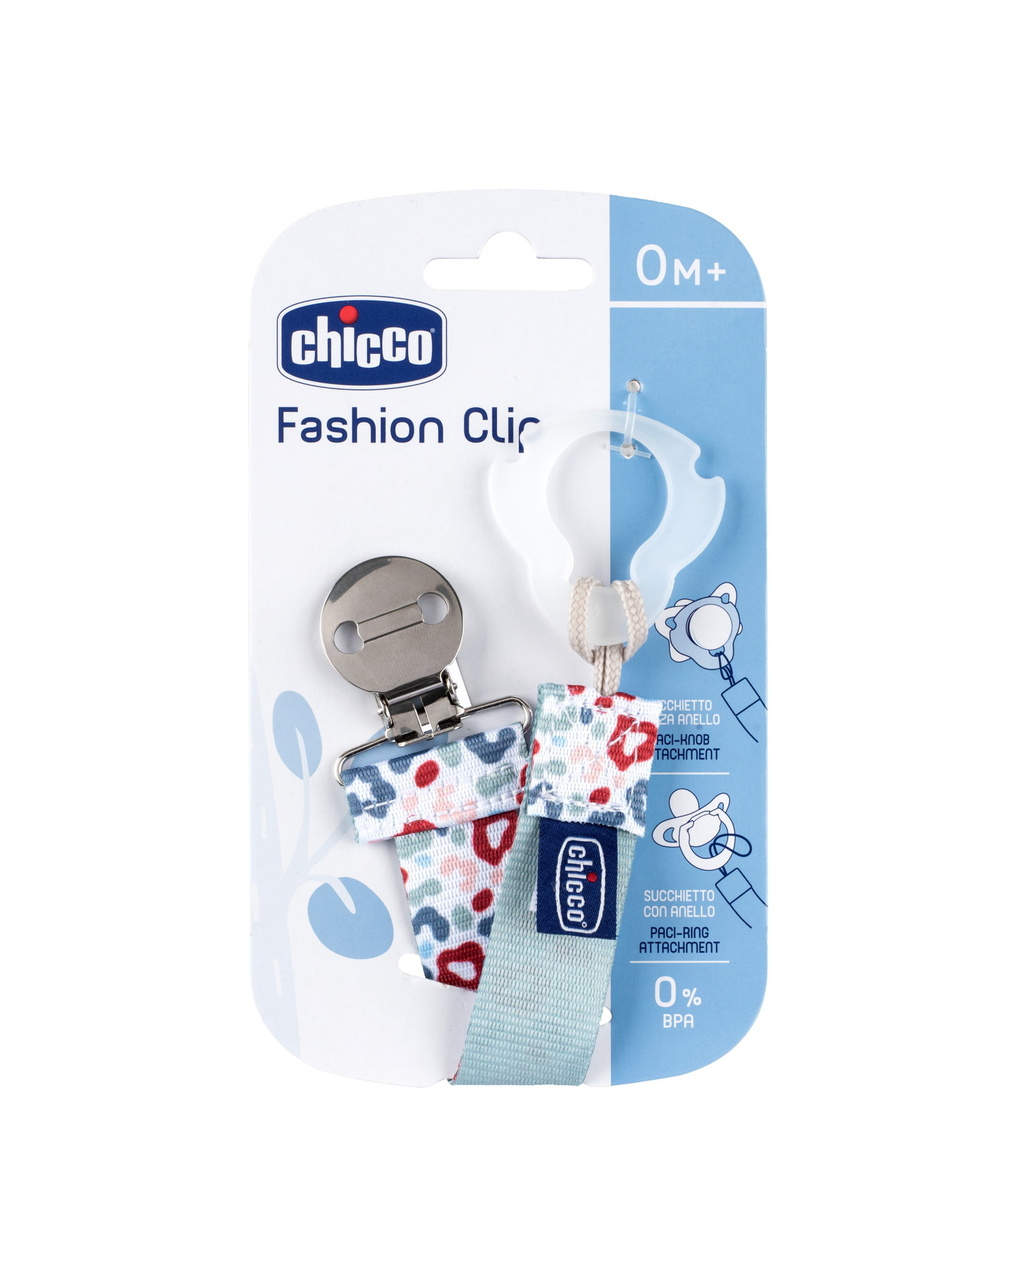 Fashion clip green 0m+ - chicco - Chicco